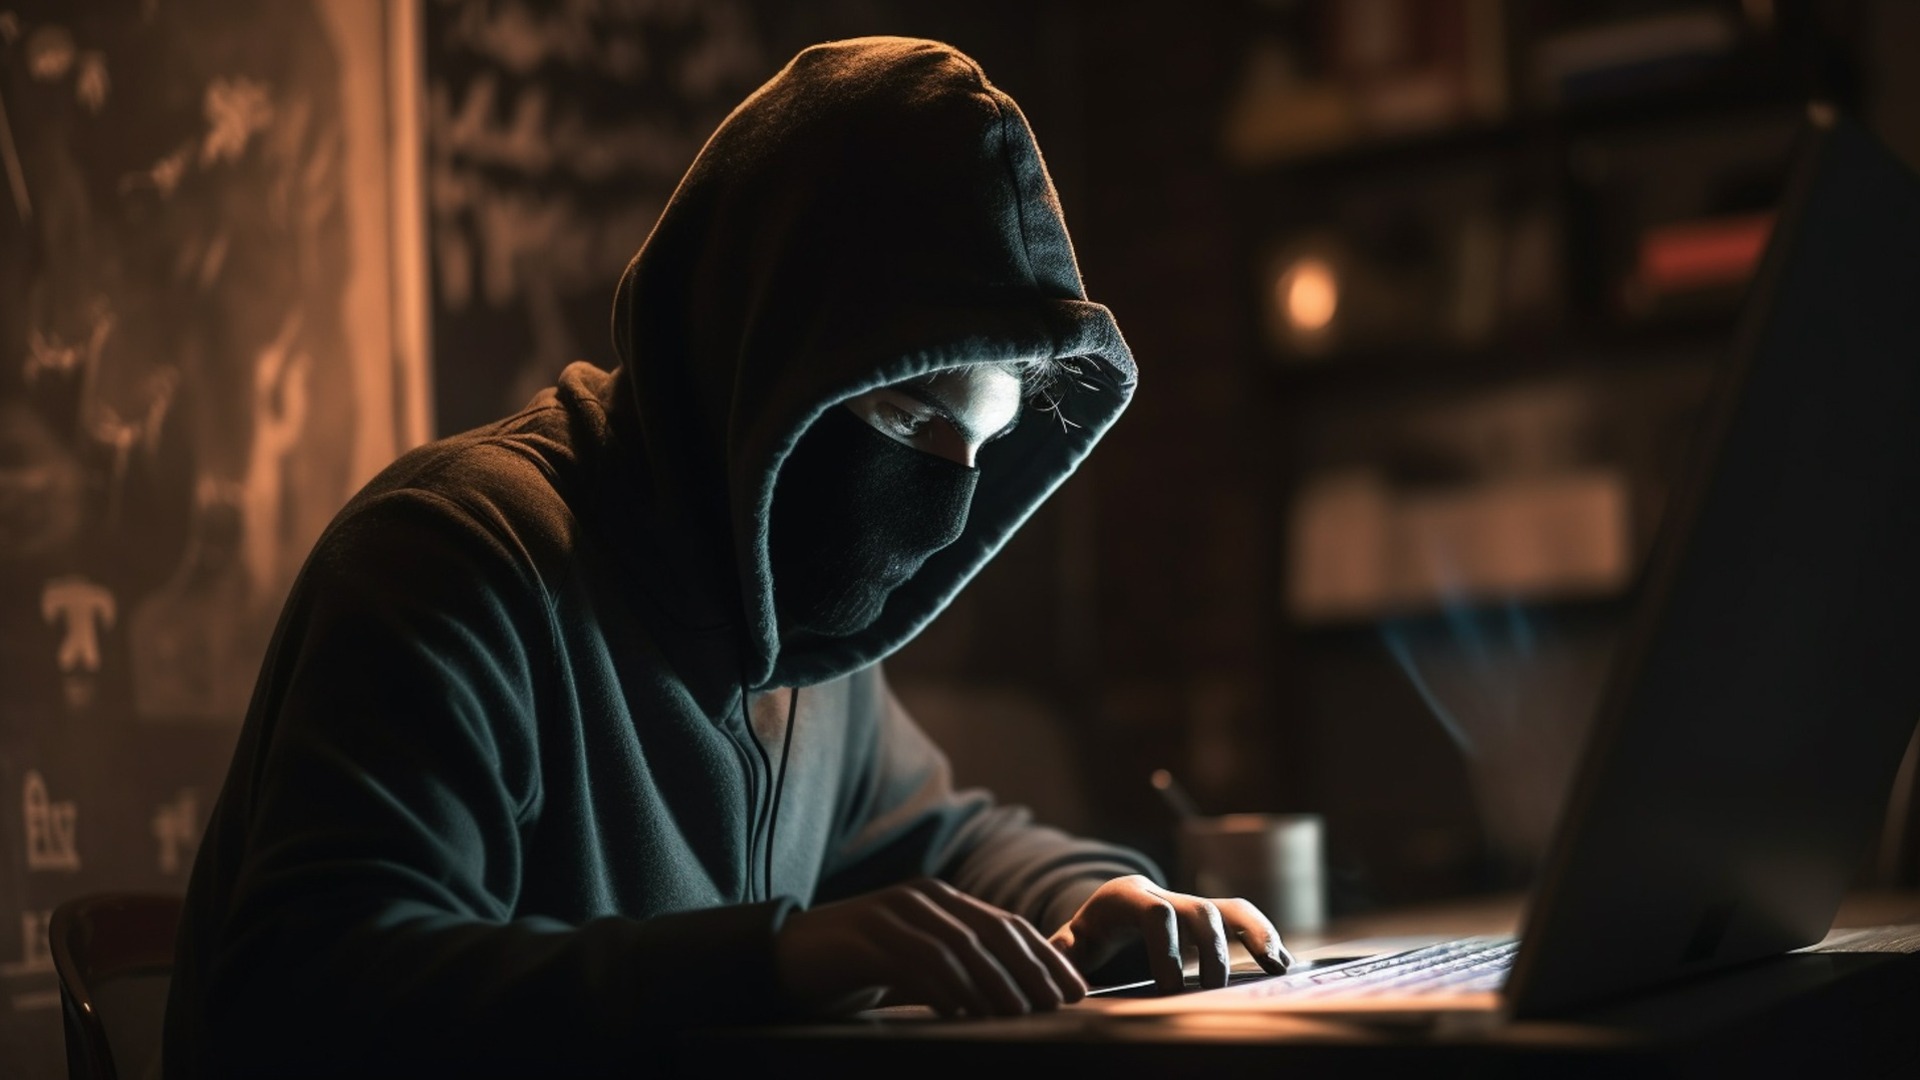 СМИ: экс-сотрудник спецслужбы получил взятку от пермских хакеров